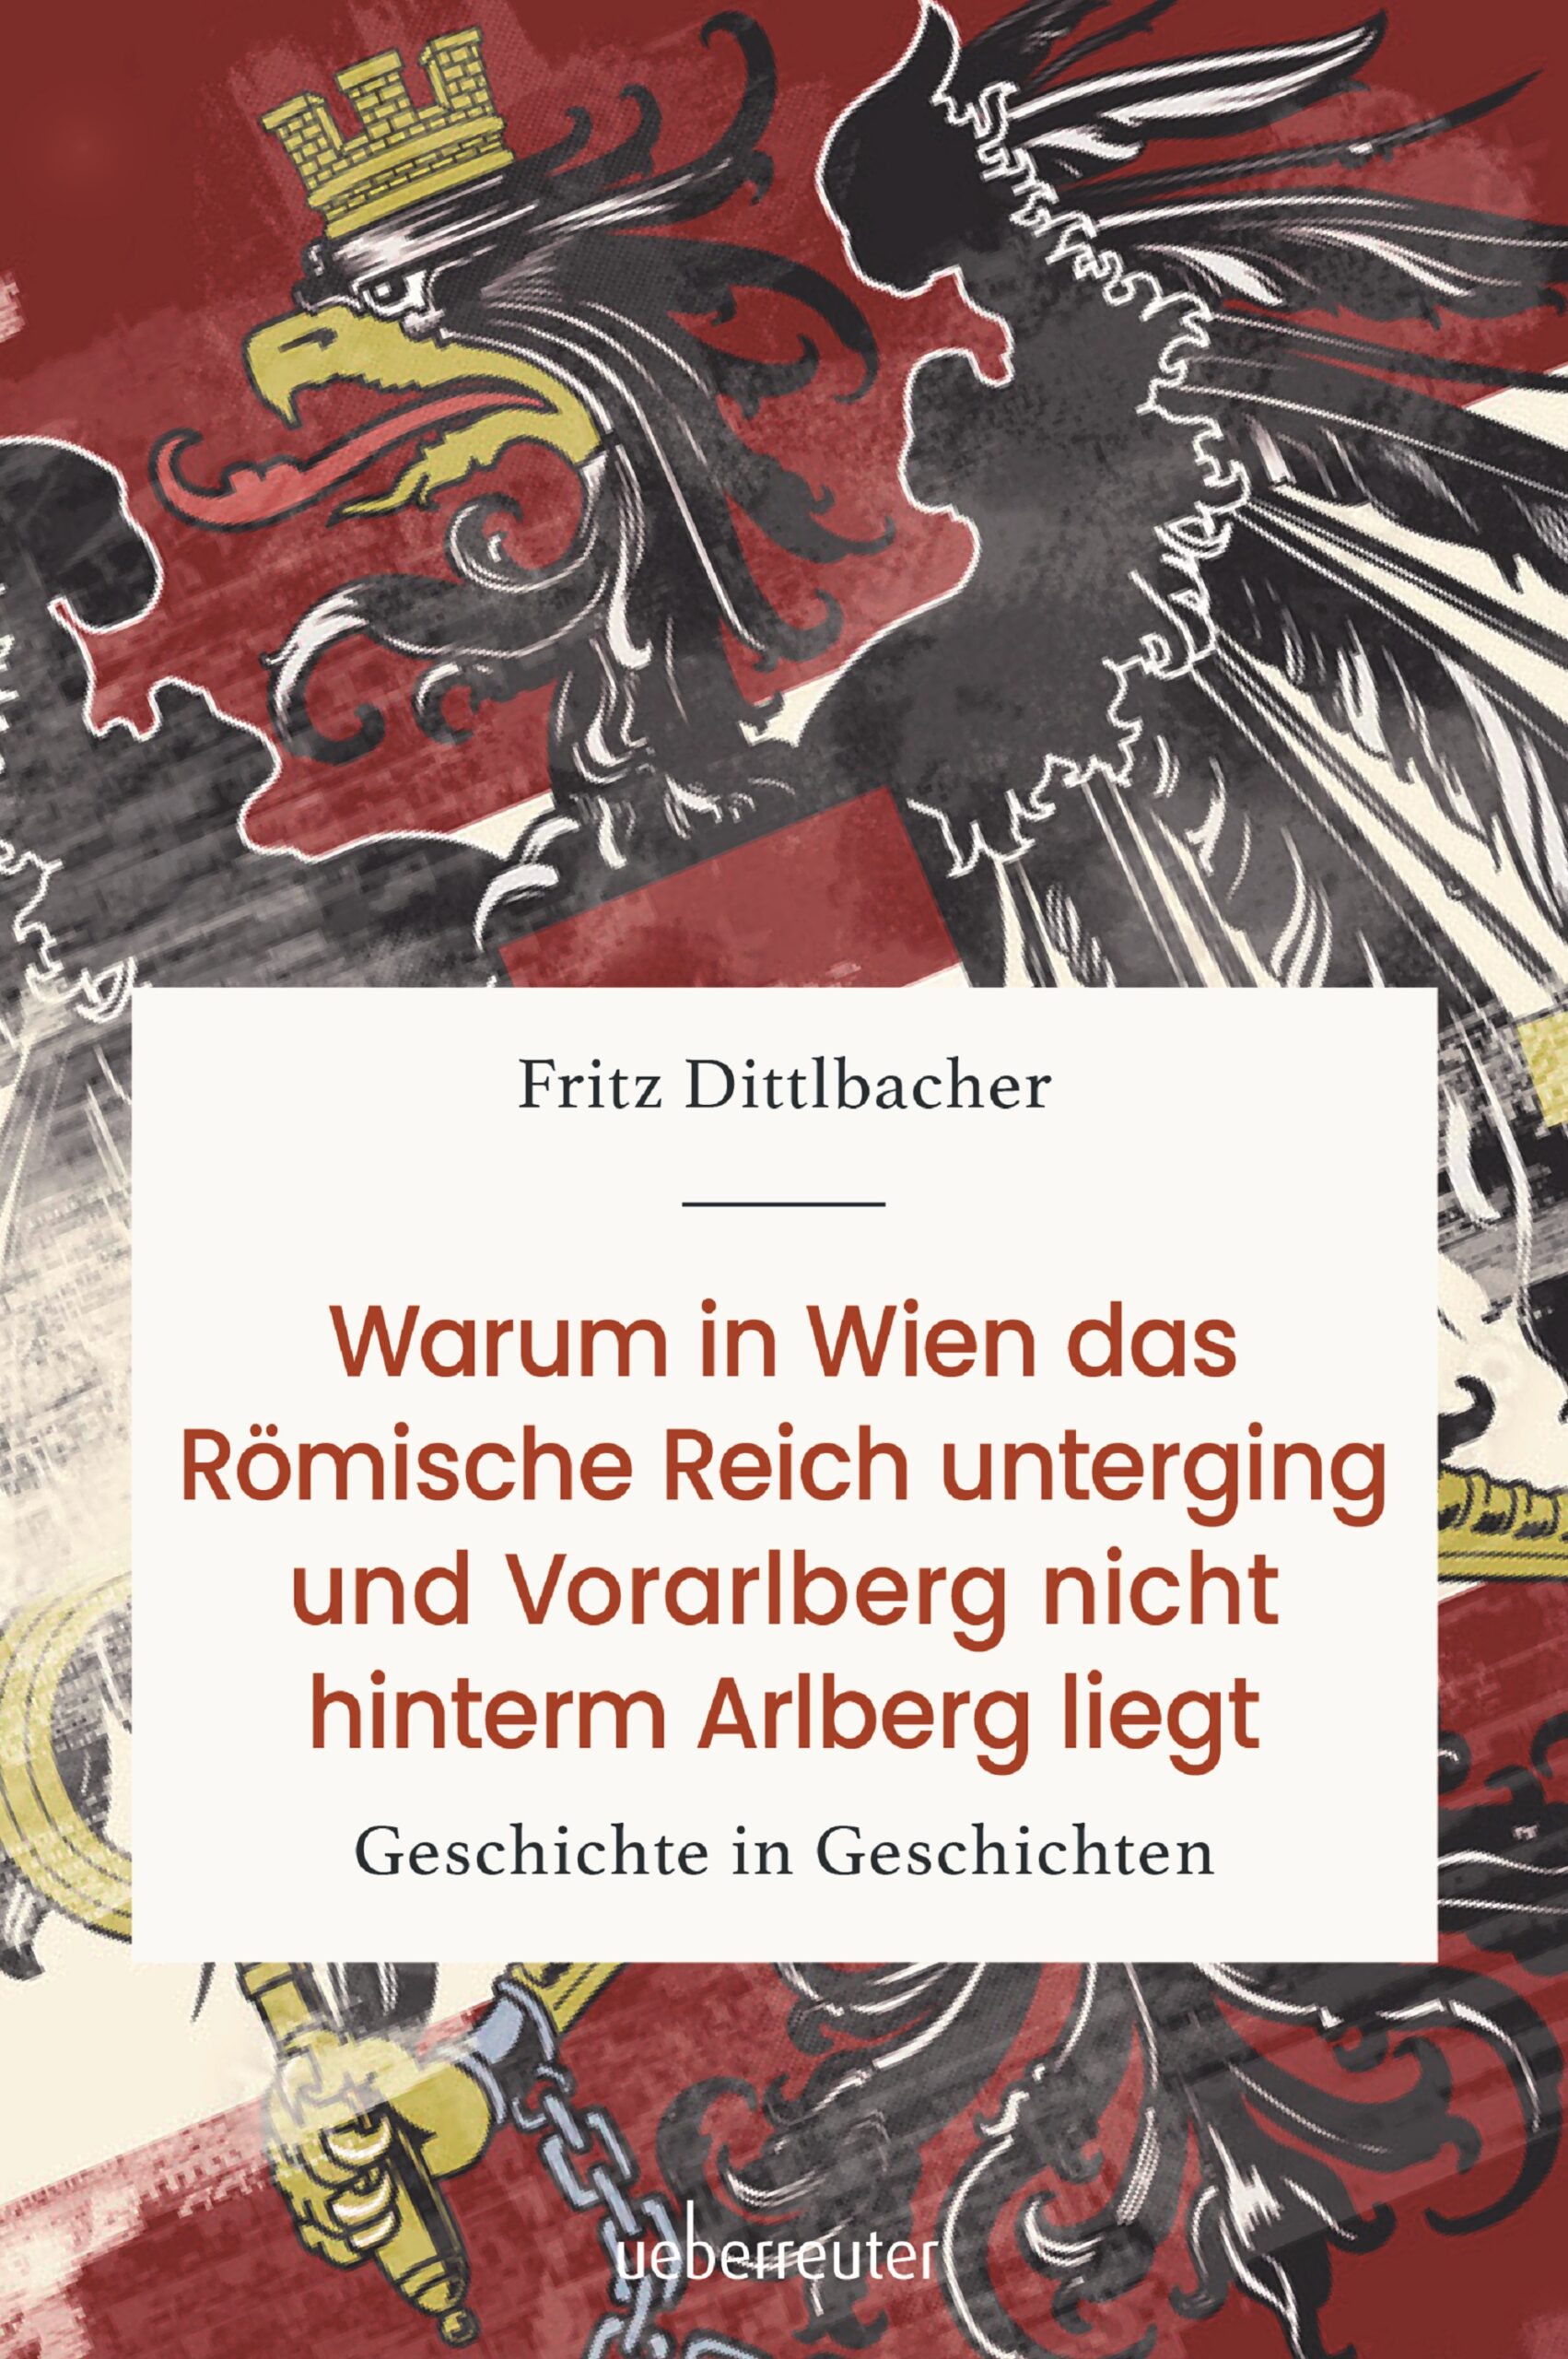 Fritz Dittlbacher: Warum in Wien das Römische Reich unterging und Vorarlberg nicht hinterm Arlberg liegt